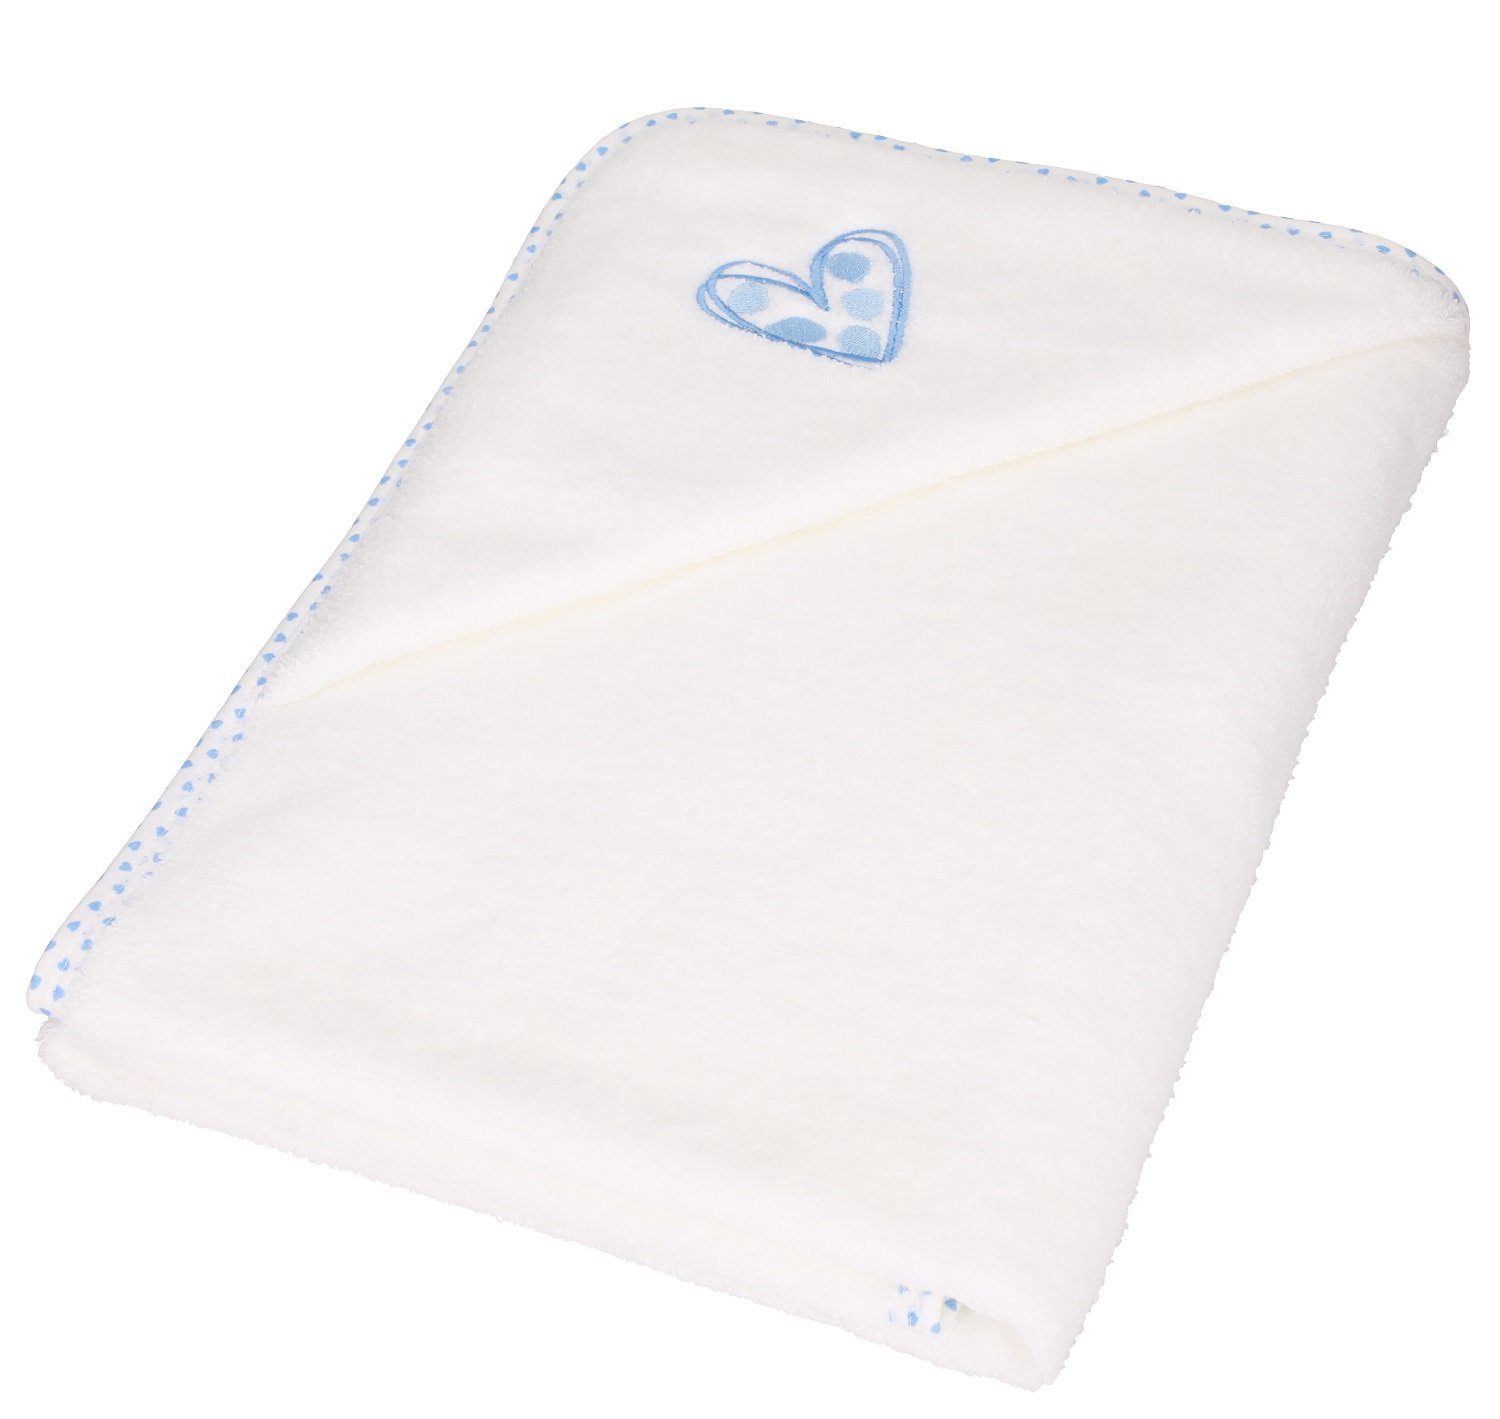 Betz Kapuzenhandtuch 3tlg. Babyset Baumwolle Waschhandschuh, Kinderbadetuch weiß-blau 100% 1 Lätzchen 1 Herzchen 1